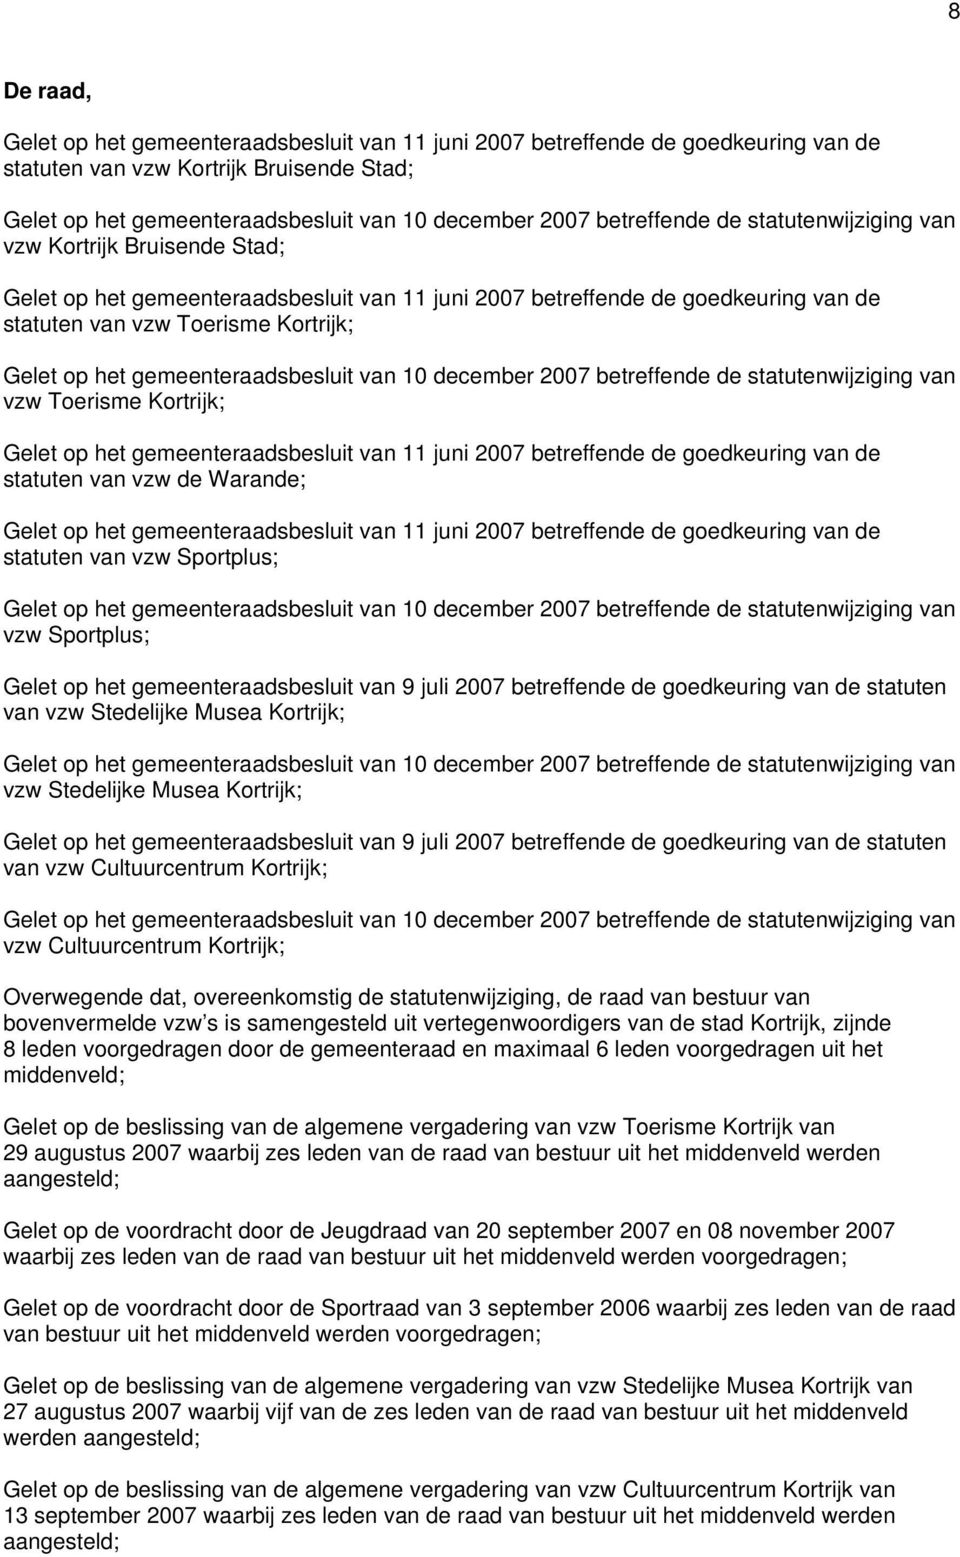 gemeenteraadsbesluit van 10 december 2007 betreffende de statutenwijziging van vzw Toerisme Kortrijk; Gelet op het gemeenteraadsbesluit van 11 juni 2007 betreffende de goedkeuring van de statuten van